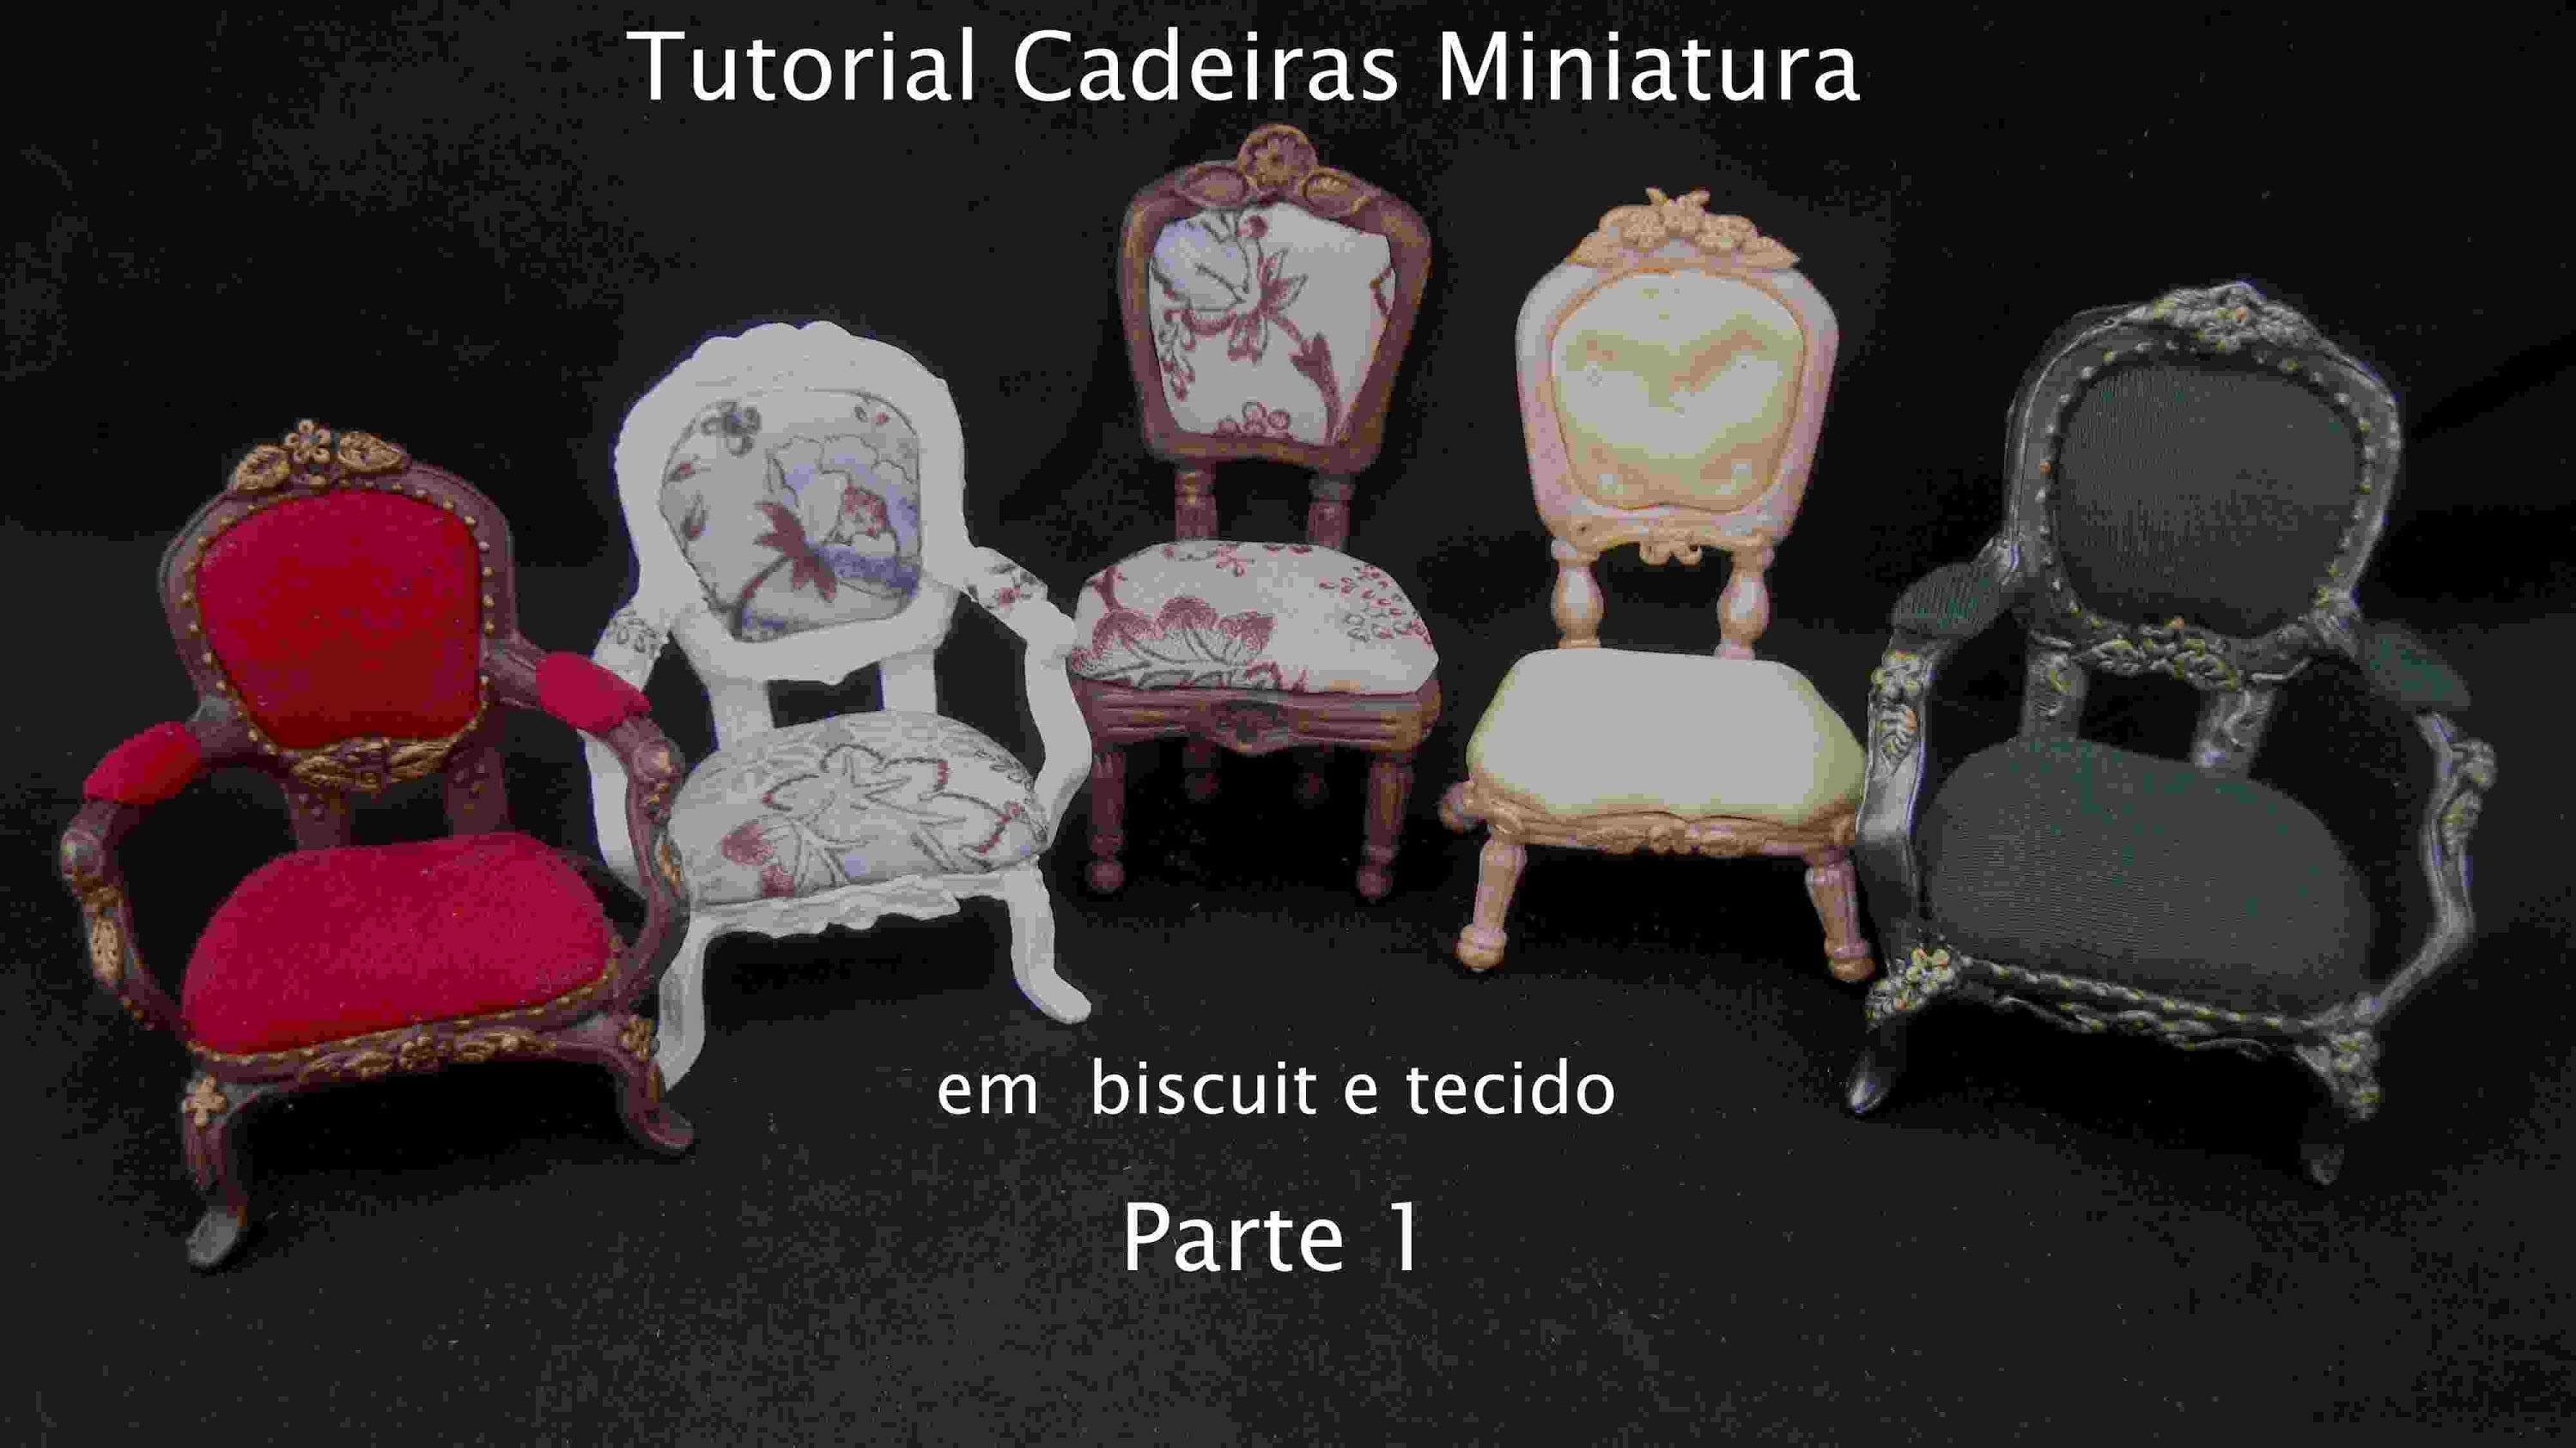 Cadeira miniatura em biscuit e tecido- parte 1